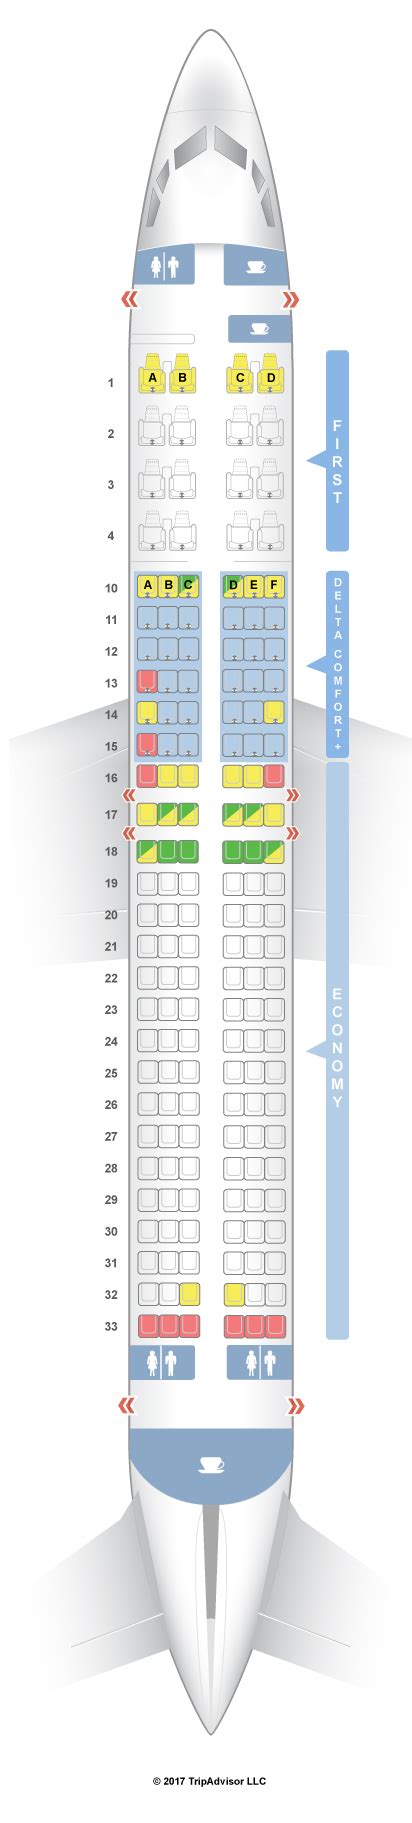 Seatguru Seat Map Delta Boeing 737 800 73h